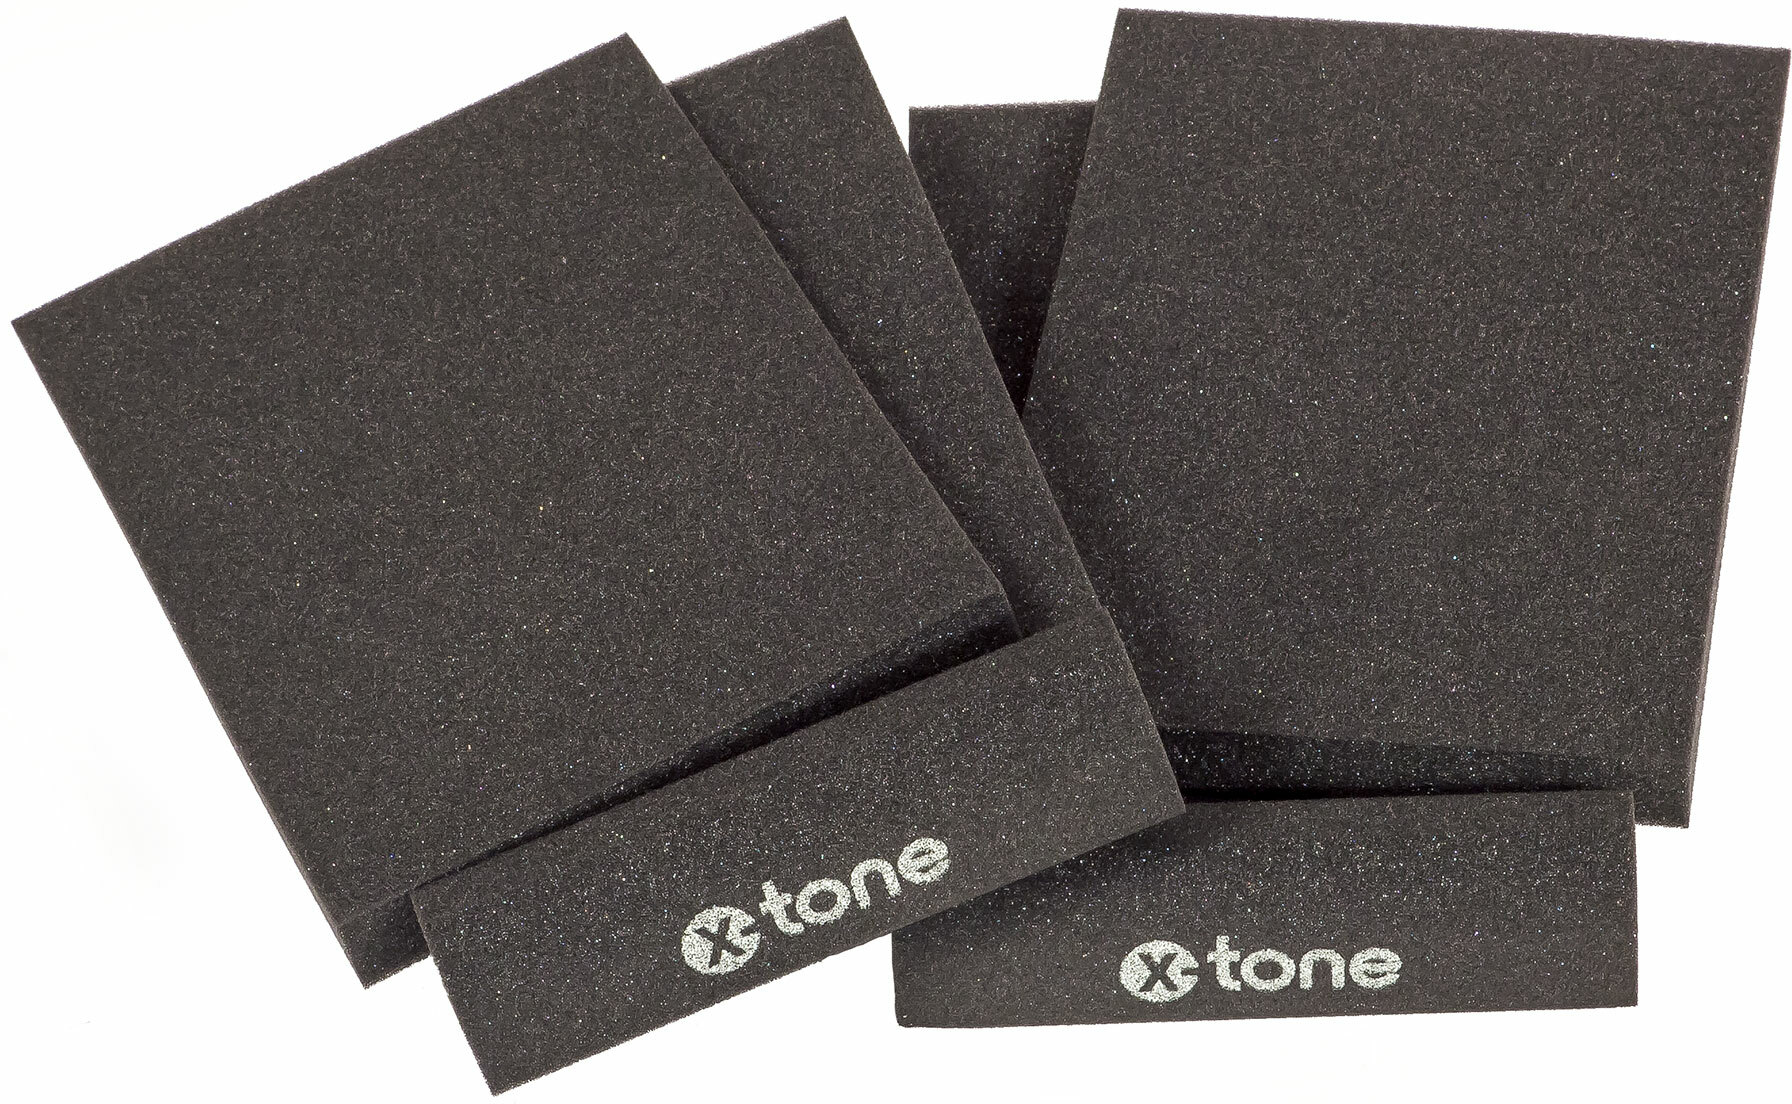 X-tone Xi 7000 Mousse Isolante Moniteurs (paire) - Lautsprecher isolations-pads - Main picture